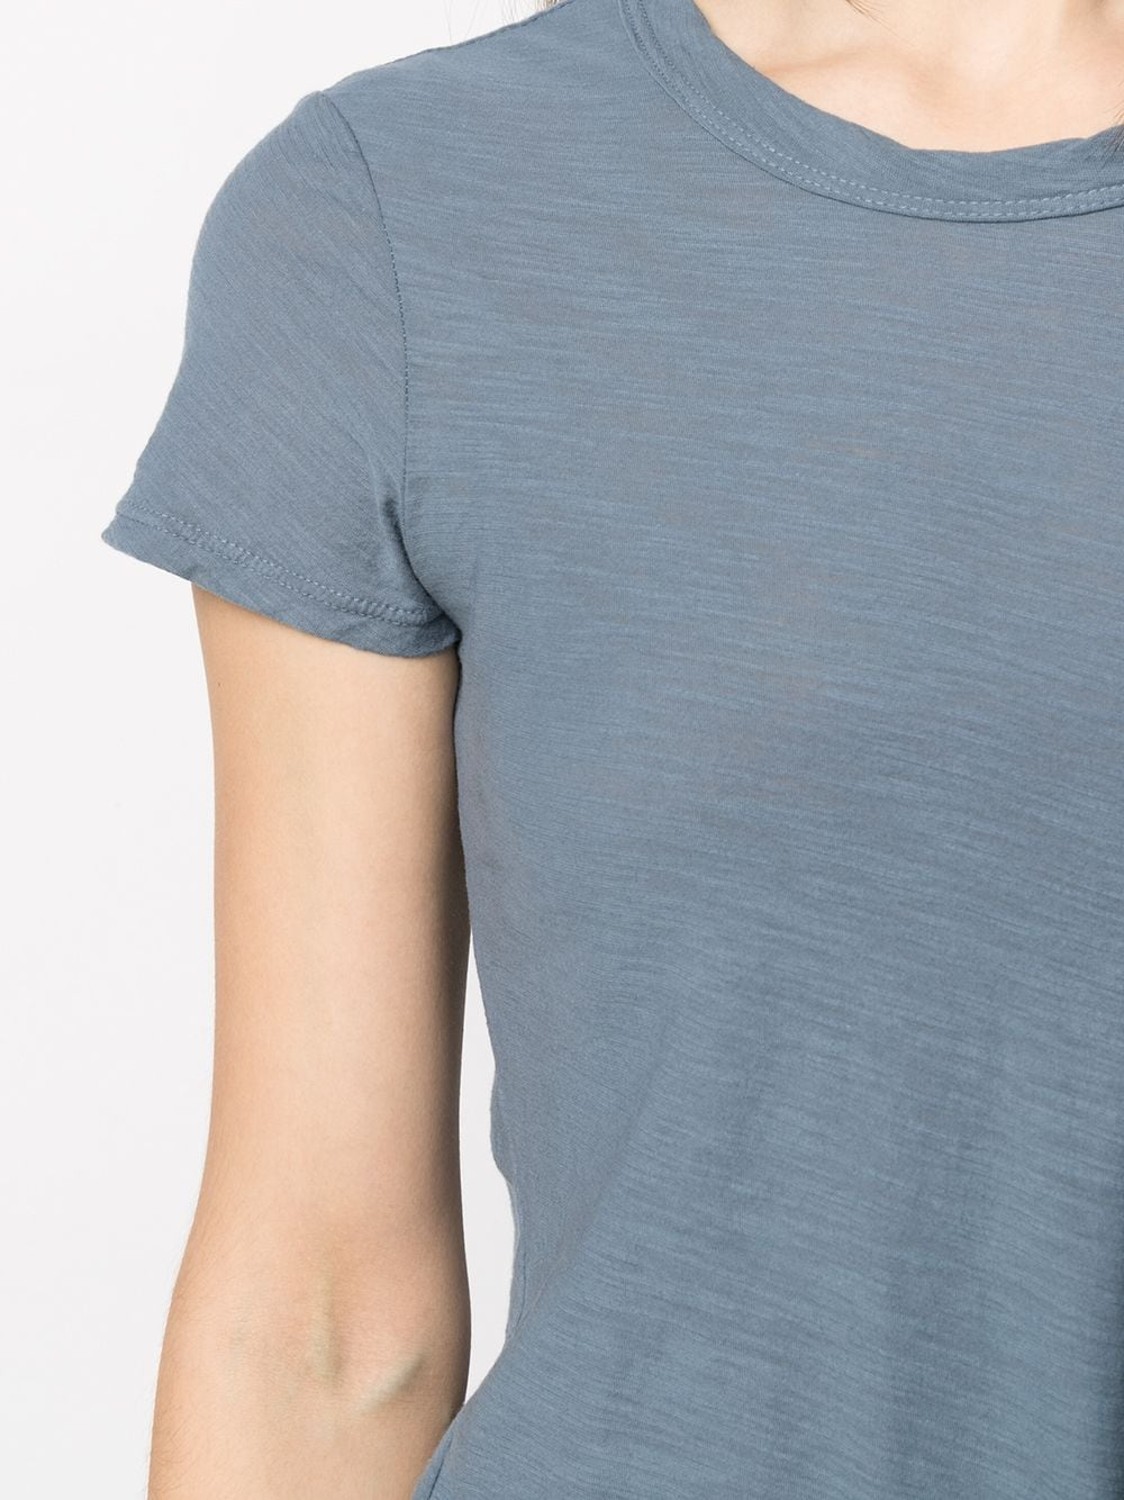 shop James Perse  T-shirts: T-shirts James Perse, girocollo, manica corta, stondata infondo, in cotone fiammato, color denim.

Composizione: 100% cotone. number 2056